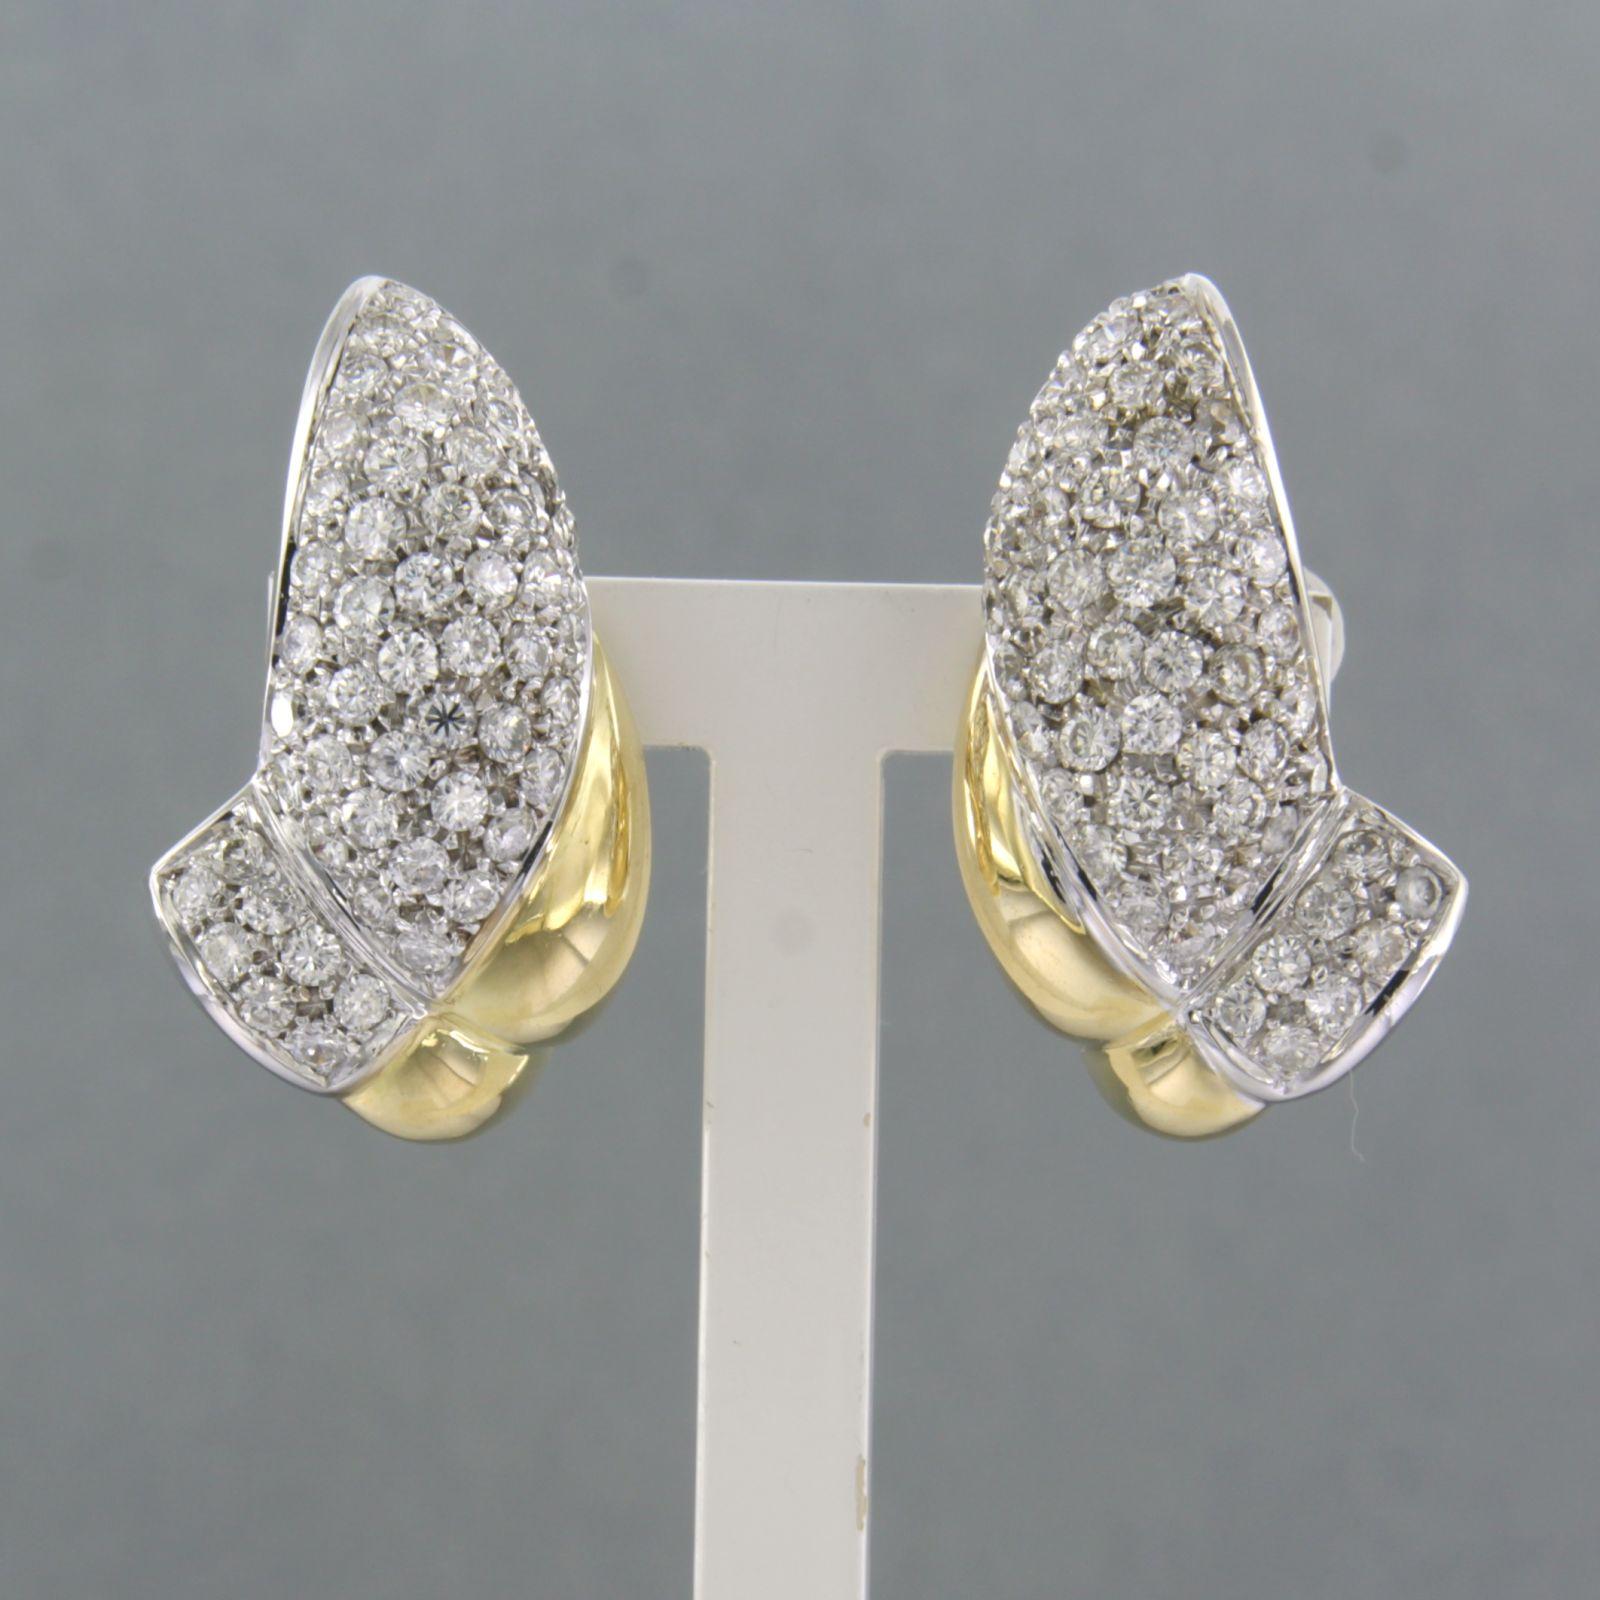 Ohrclips aus 18 Karat Bicolor-Gold, besetzt mit Diamanten im Brillantschliff bis zu. 2,00ct - F/G - VS/SI

Ausführliche Beschreibung:

die Größe des Ohrclips ist 2,4 cm lang und 1,4 cm breit

Gesamtgewicht 13,6 Gramm

gesetzt mit

- 108 x 1,5 mm -